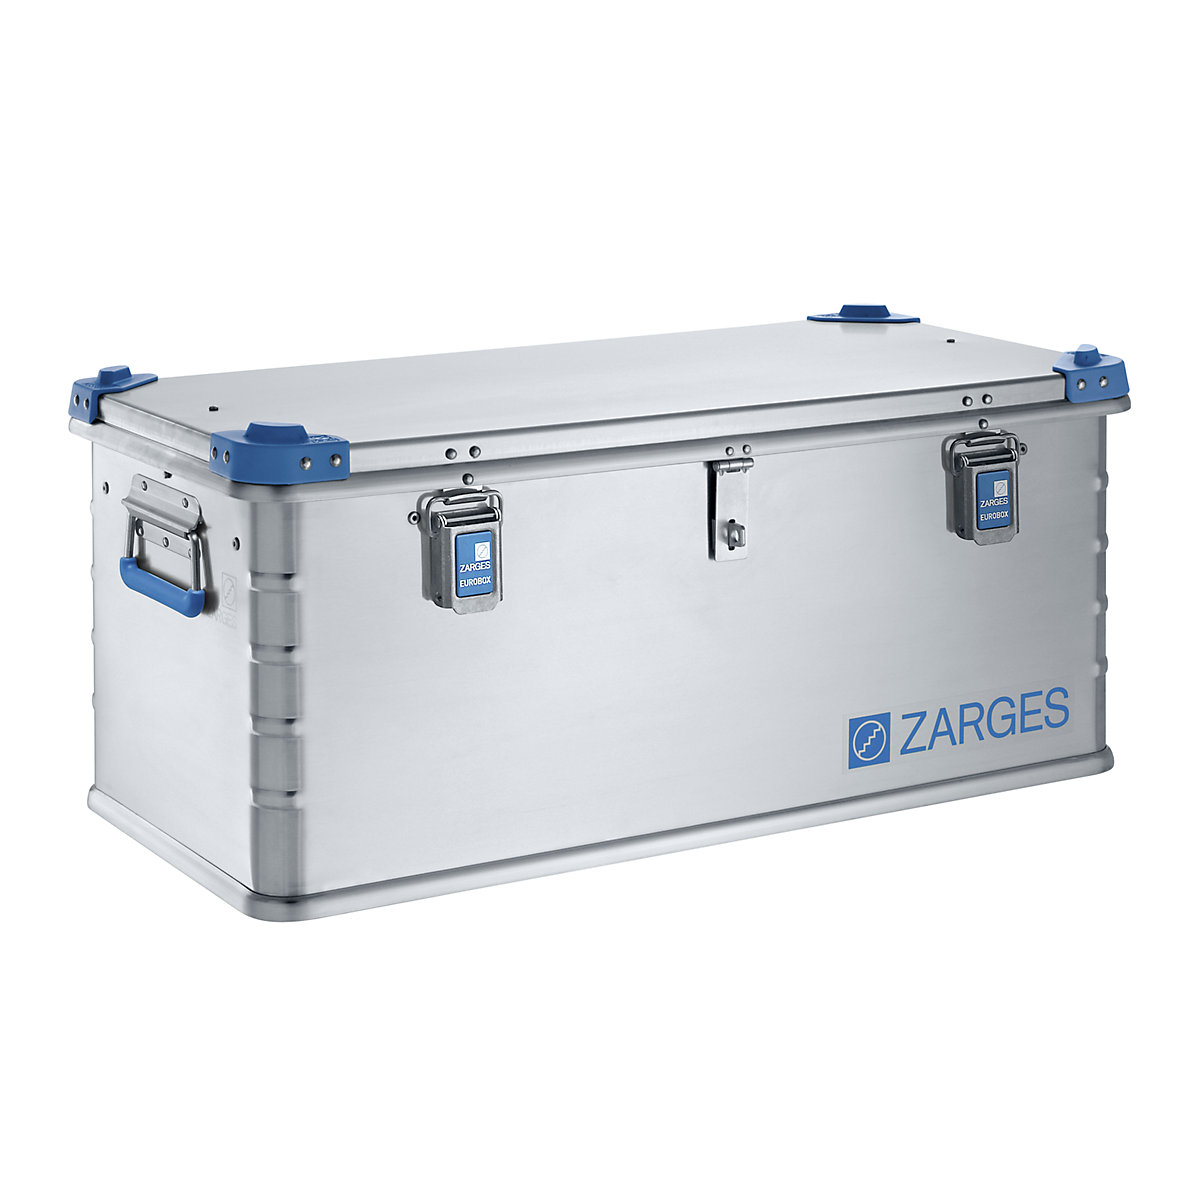 Euro-gereedschapsbox van aluminium – ZARGES, stapelbaar, inhoud 81 l-2